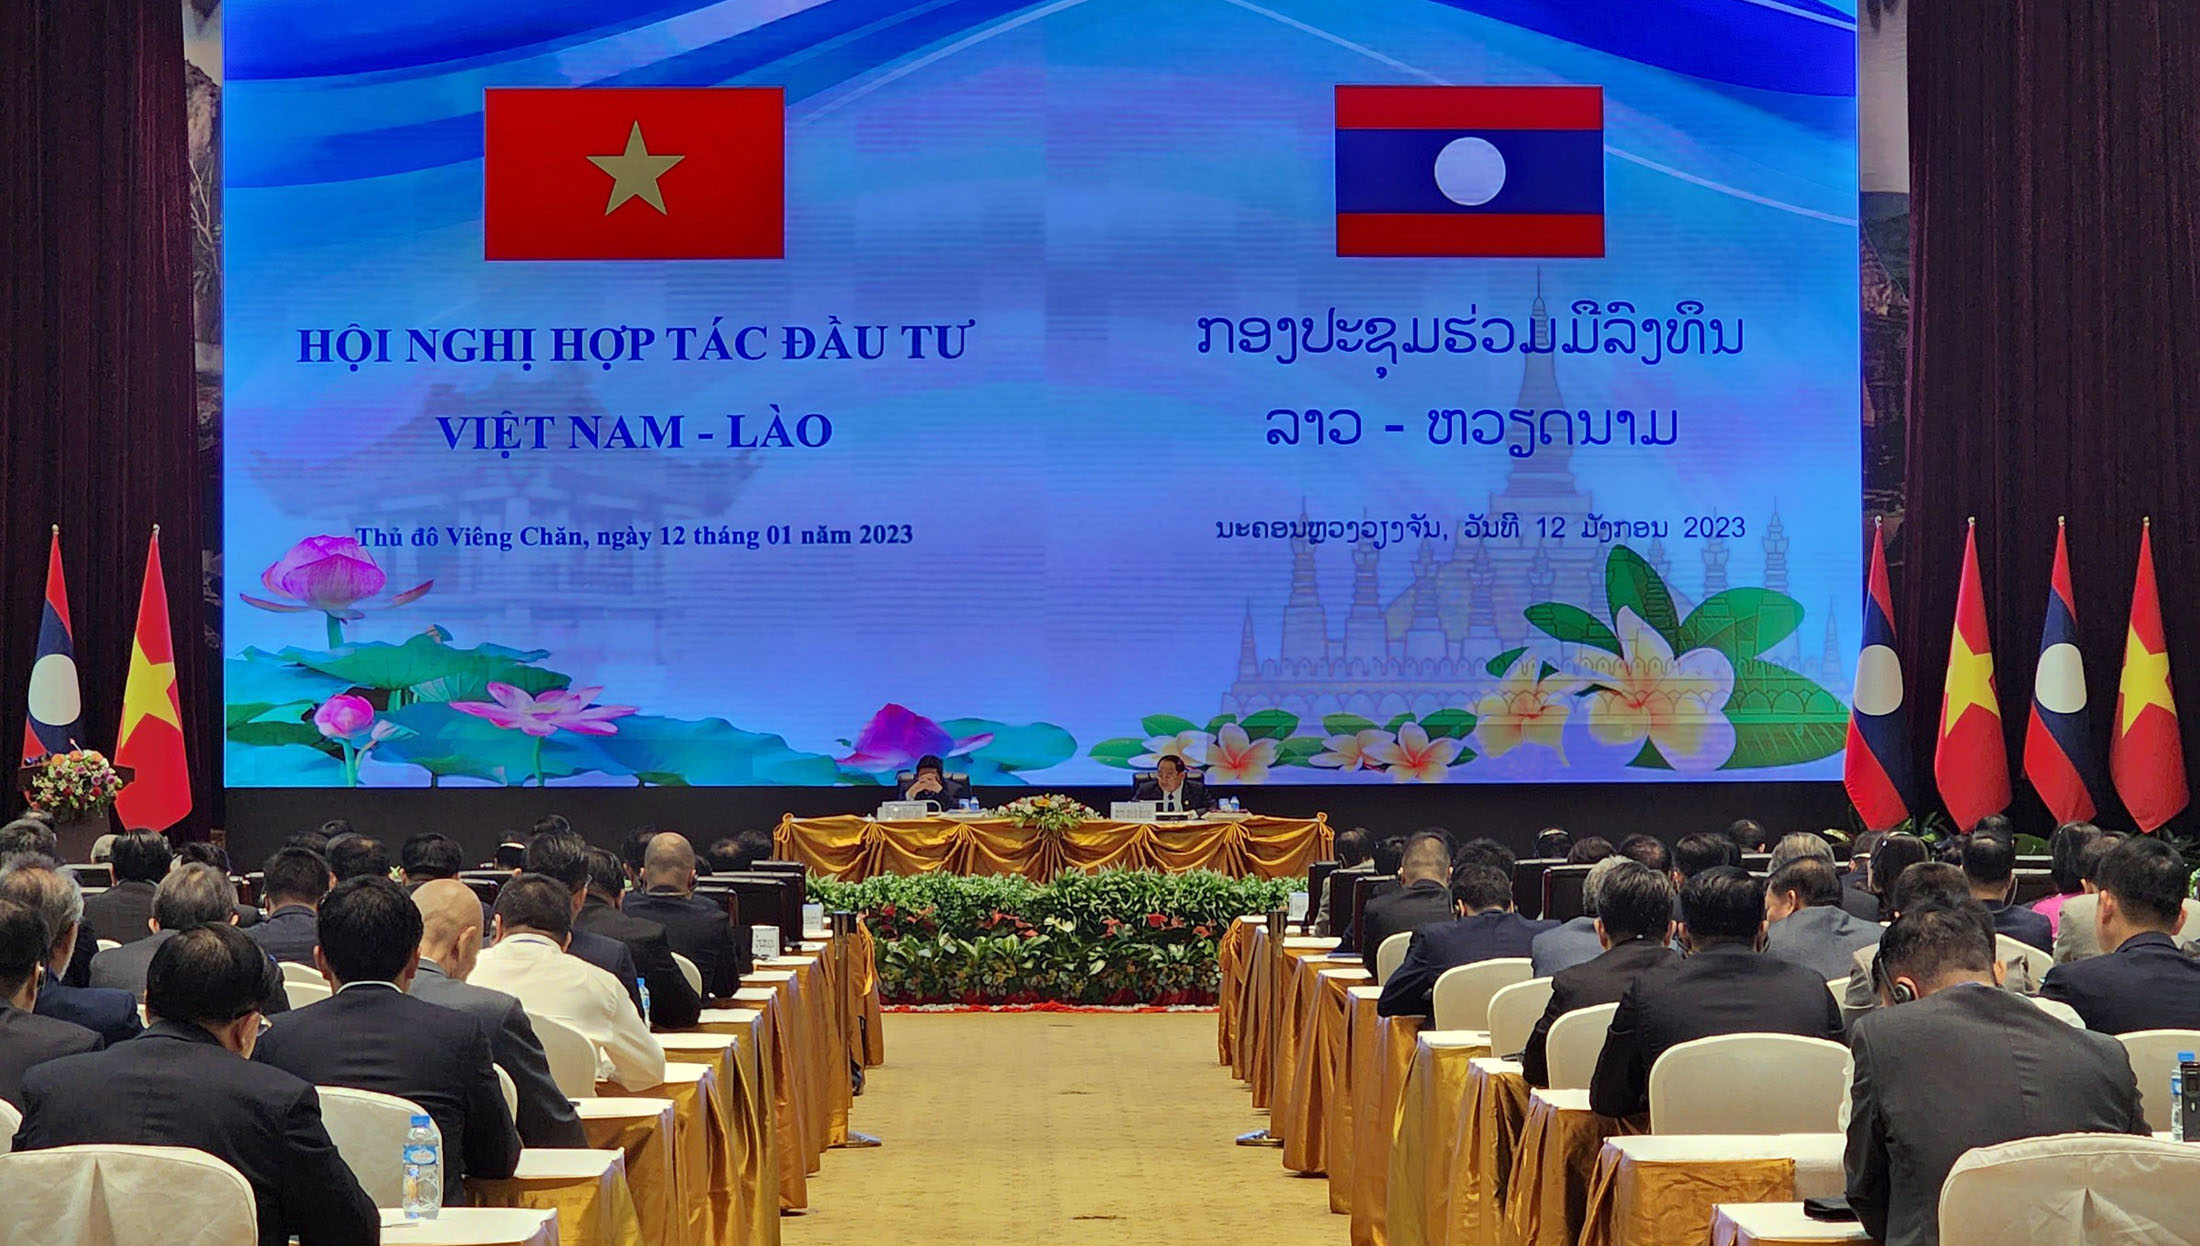 Toàn cảnh hội nghị hợp tác đầu tư Việt Nam - Lào